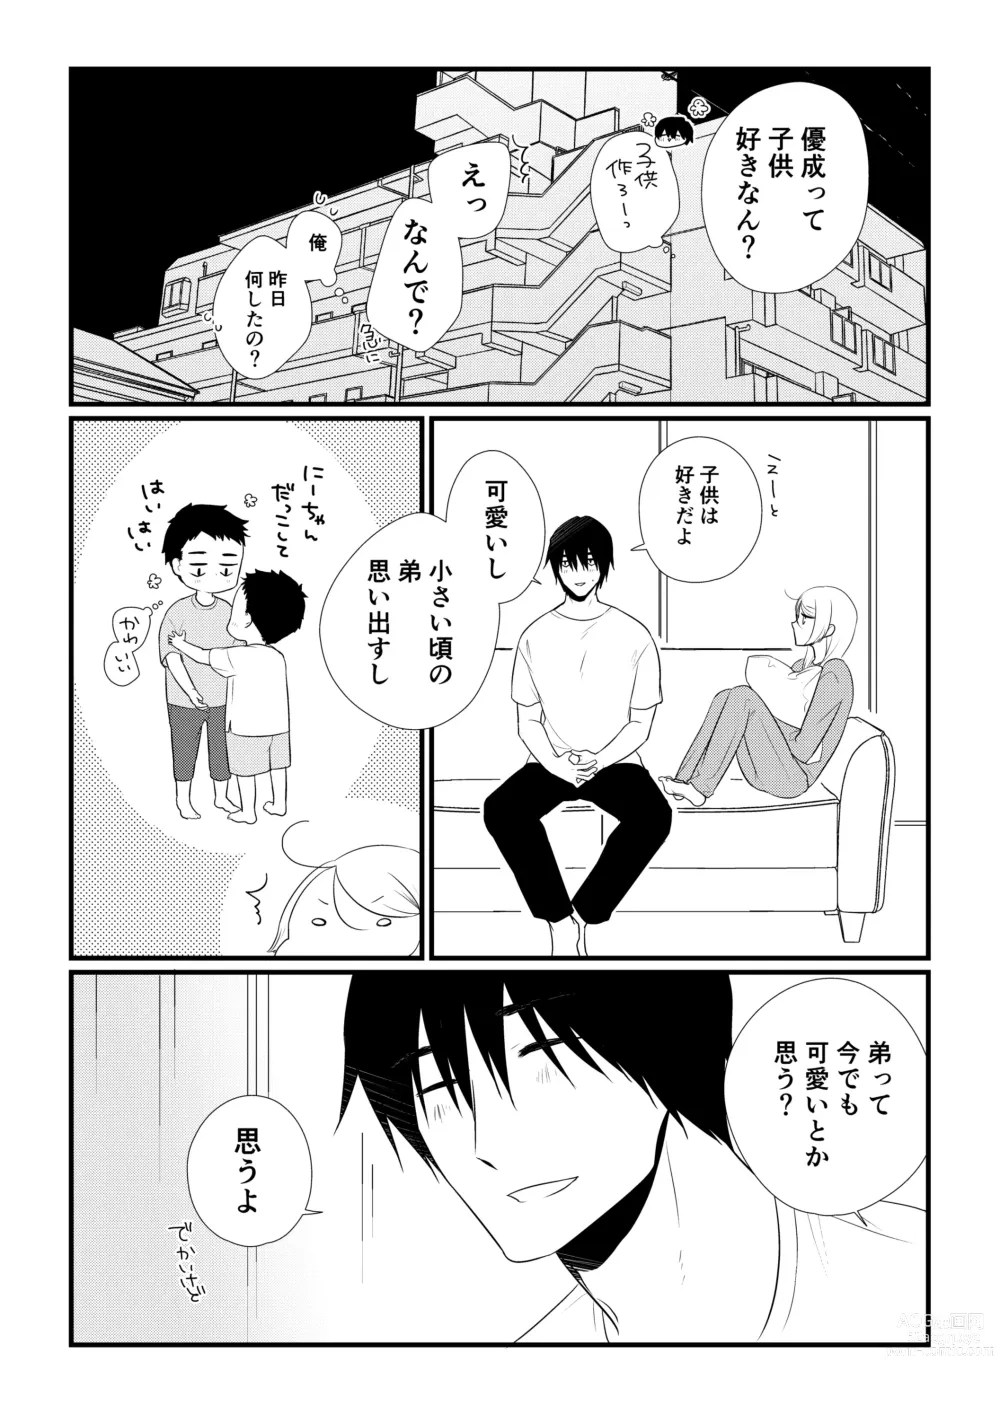 Page 133 of doujinshi Itsuki to Yuusei